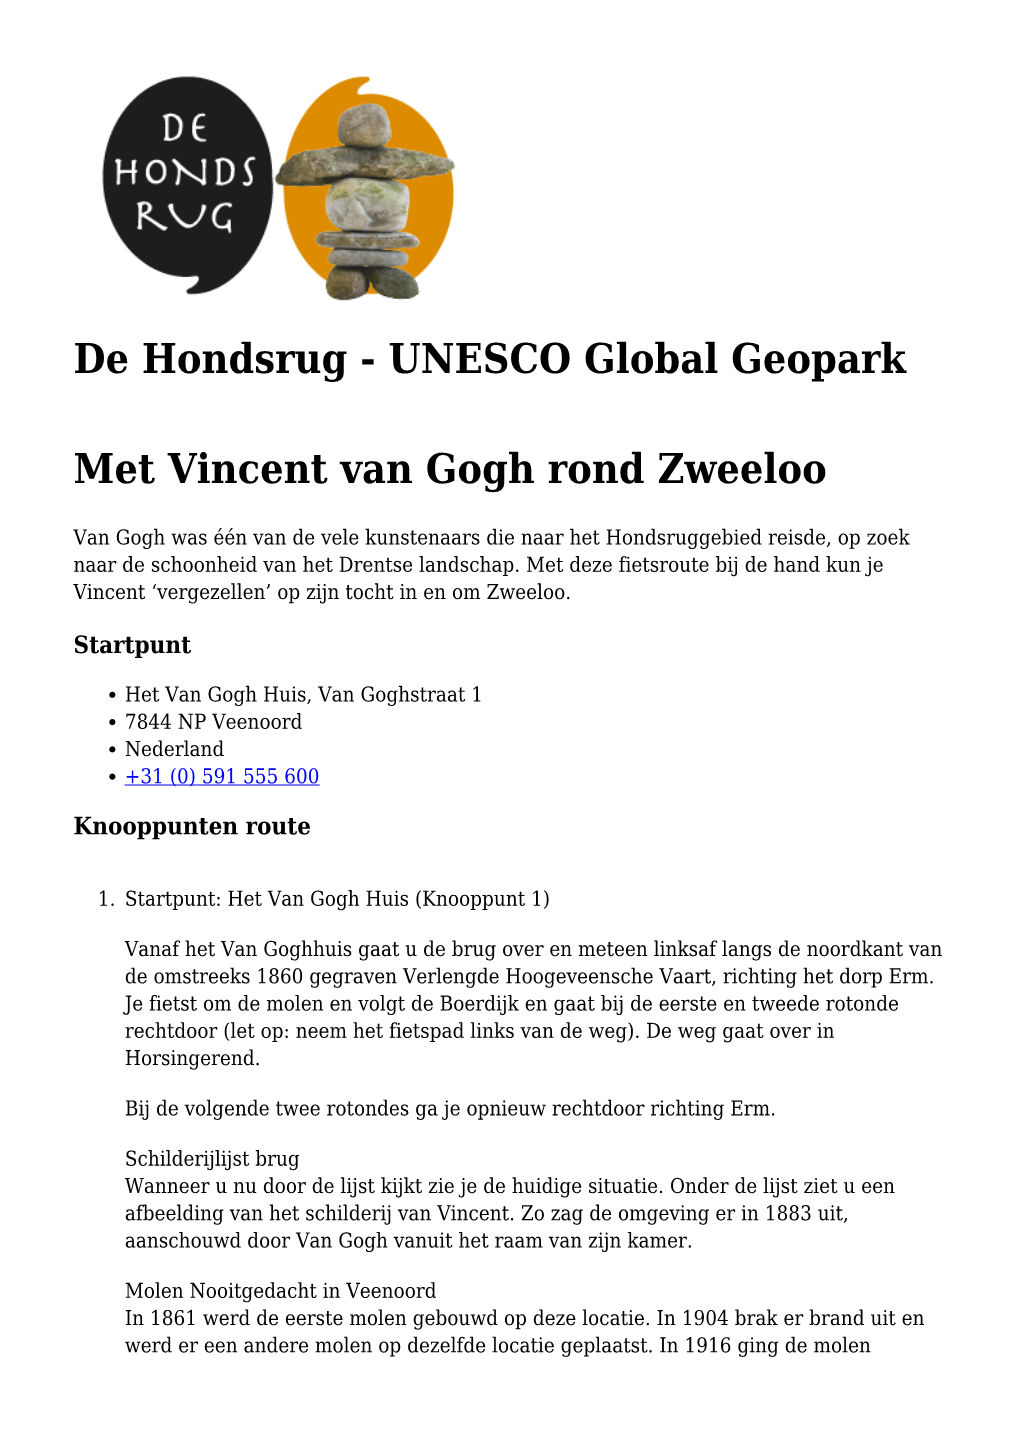 UNESCO Global Geopark Met Vincent Van Gogh Rond Zweeloo